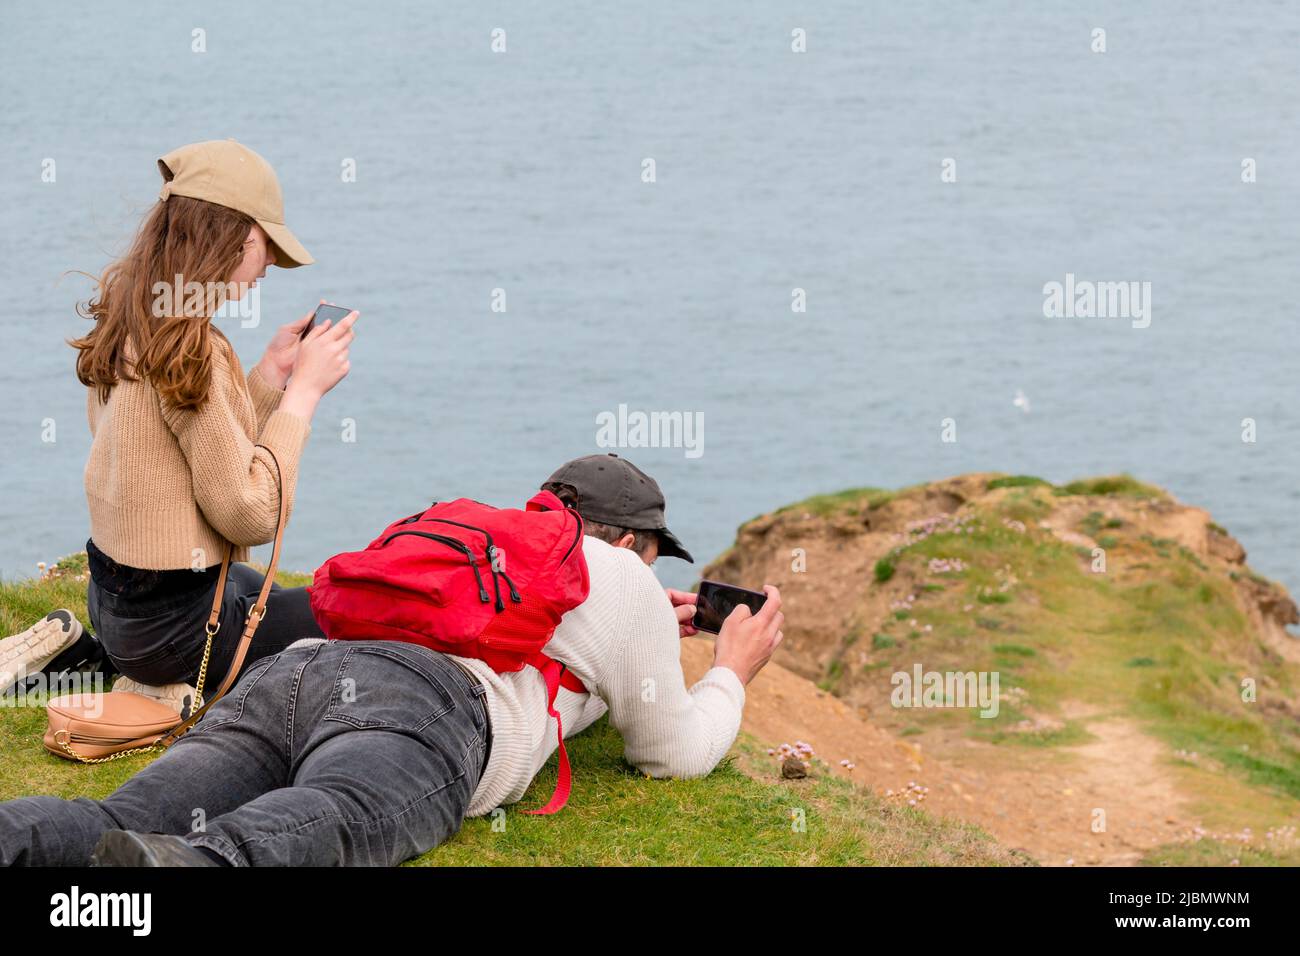 Padre e figlia birdwatching e fotografare la natura, sdraiati in cima alle scogliere costiere Foto Stock